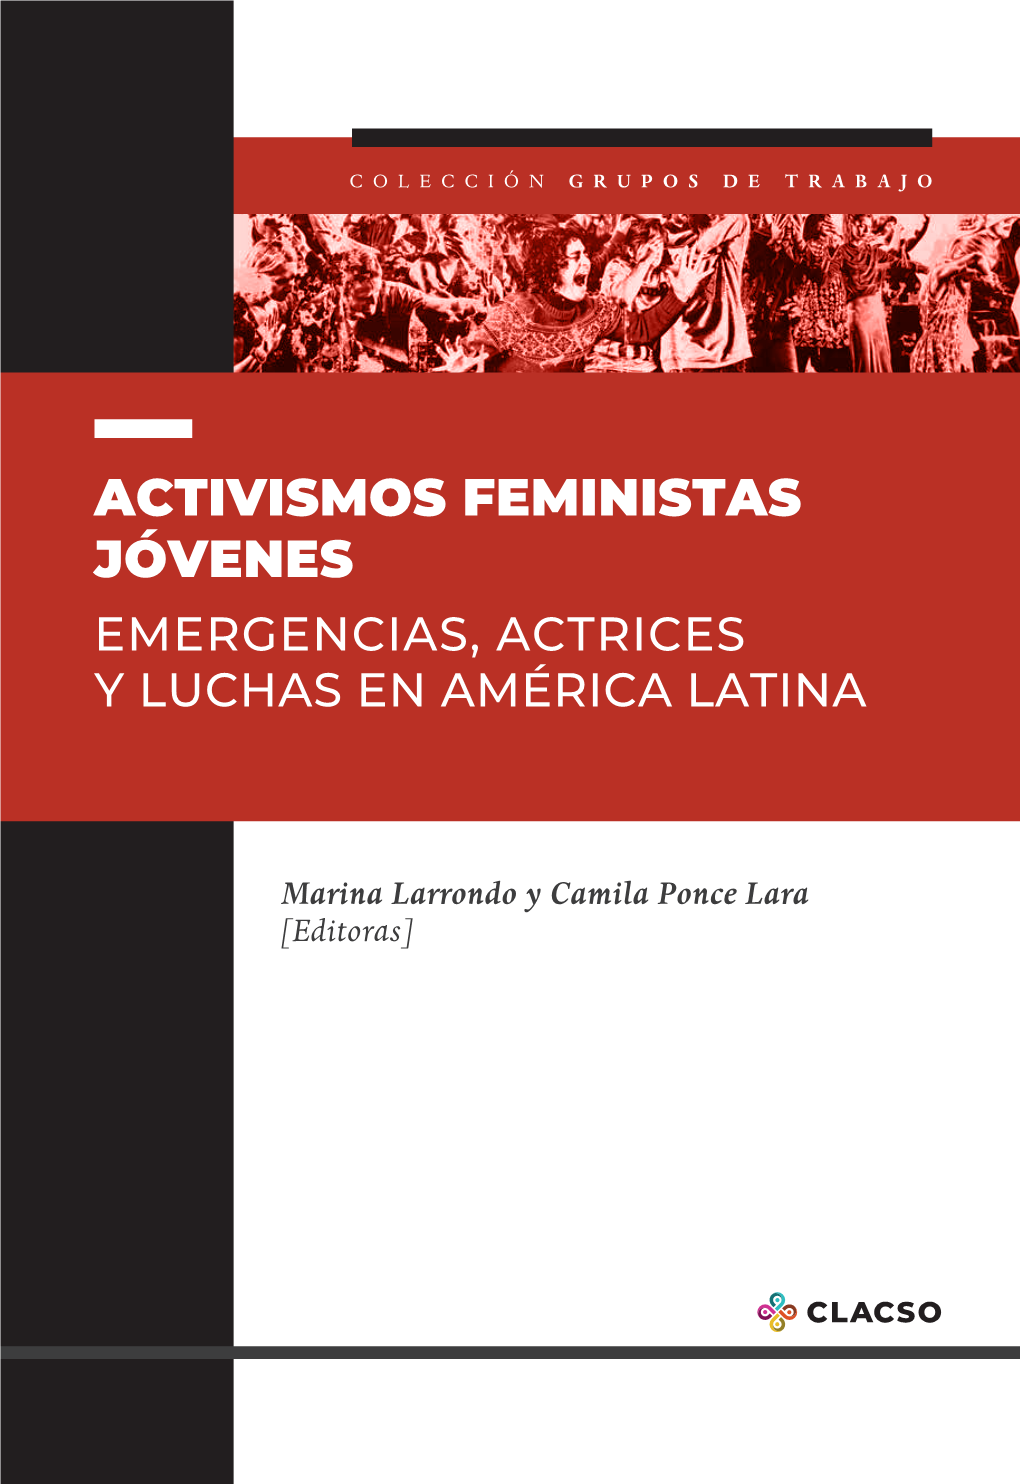 Activismos Feministas Jóvenes [Editoras]